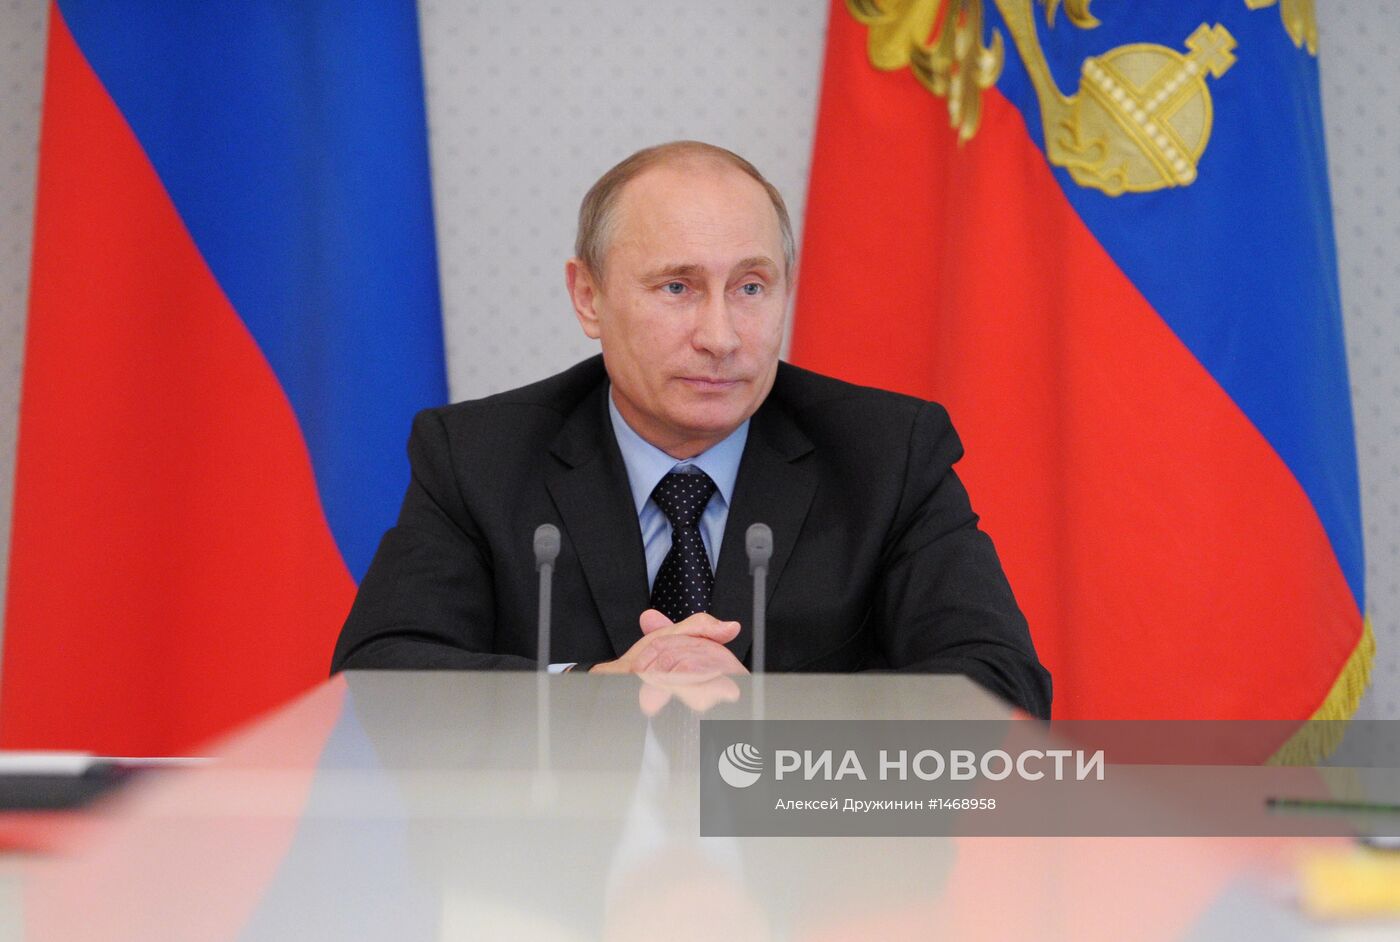 Встреча В.Путина с руководством фракций Госдумы РФ